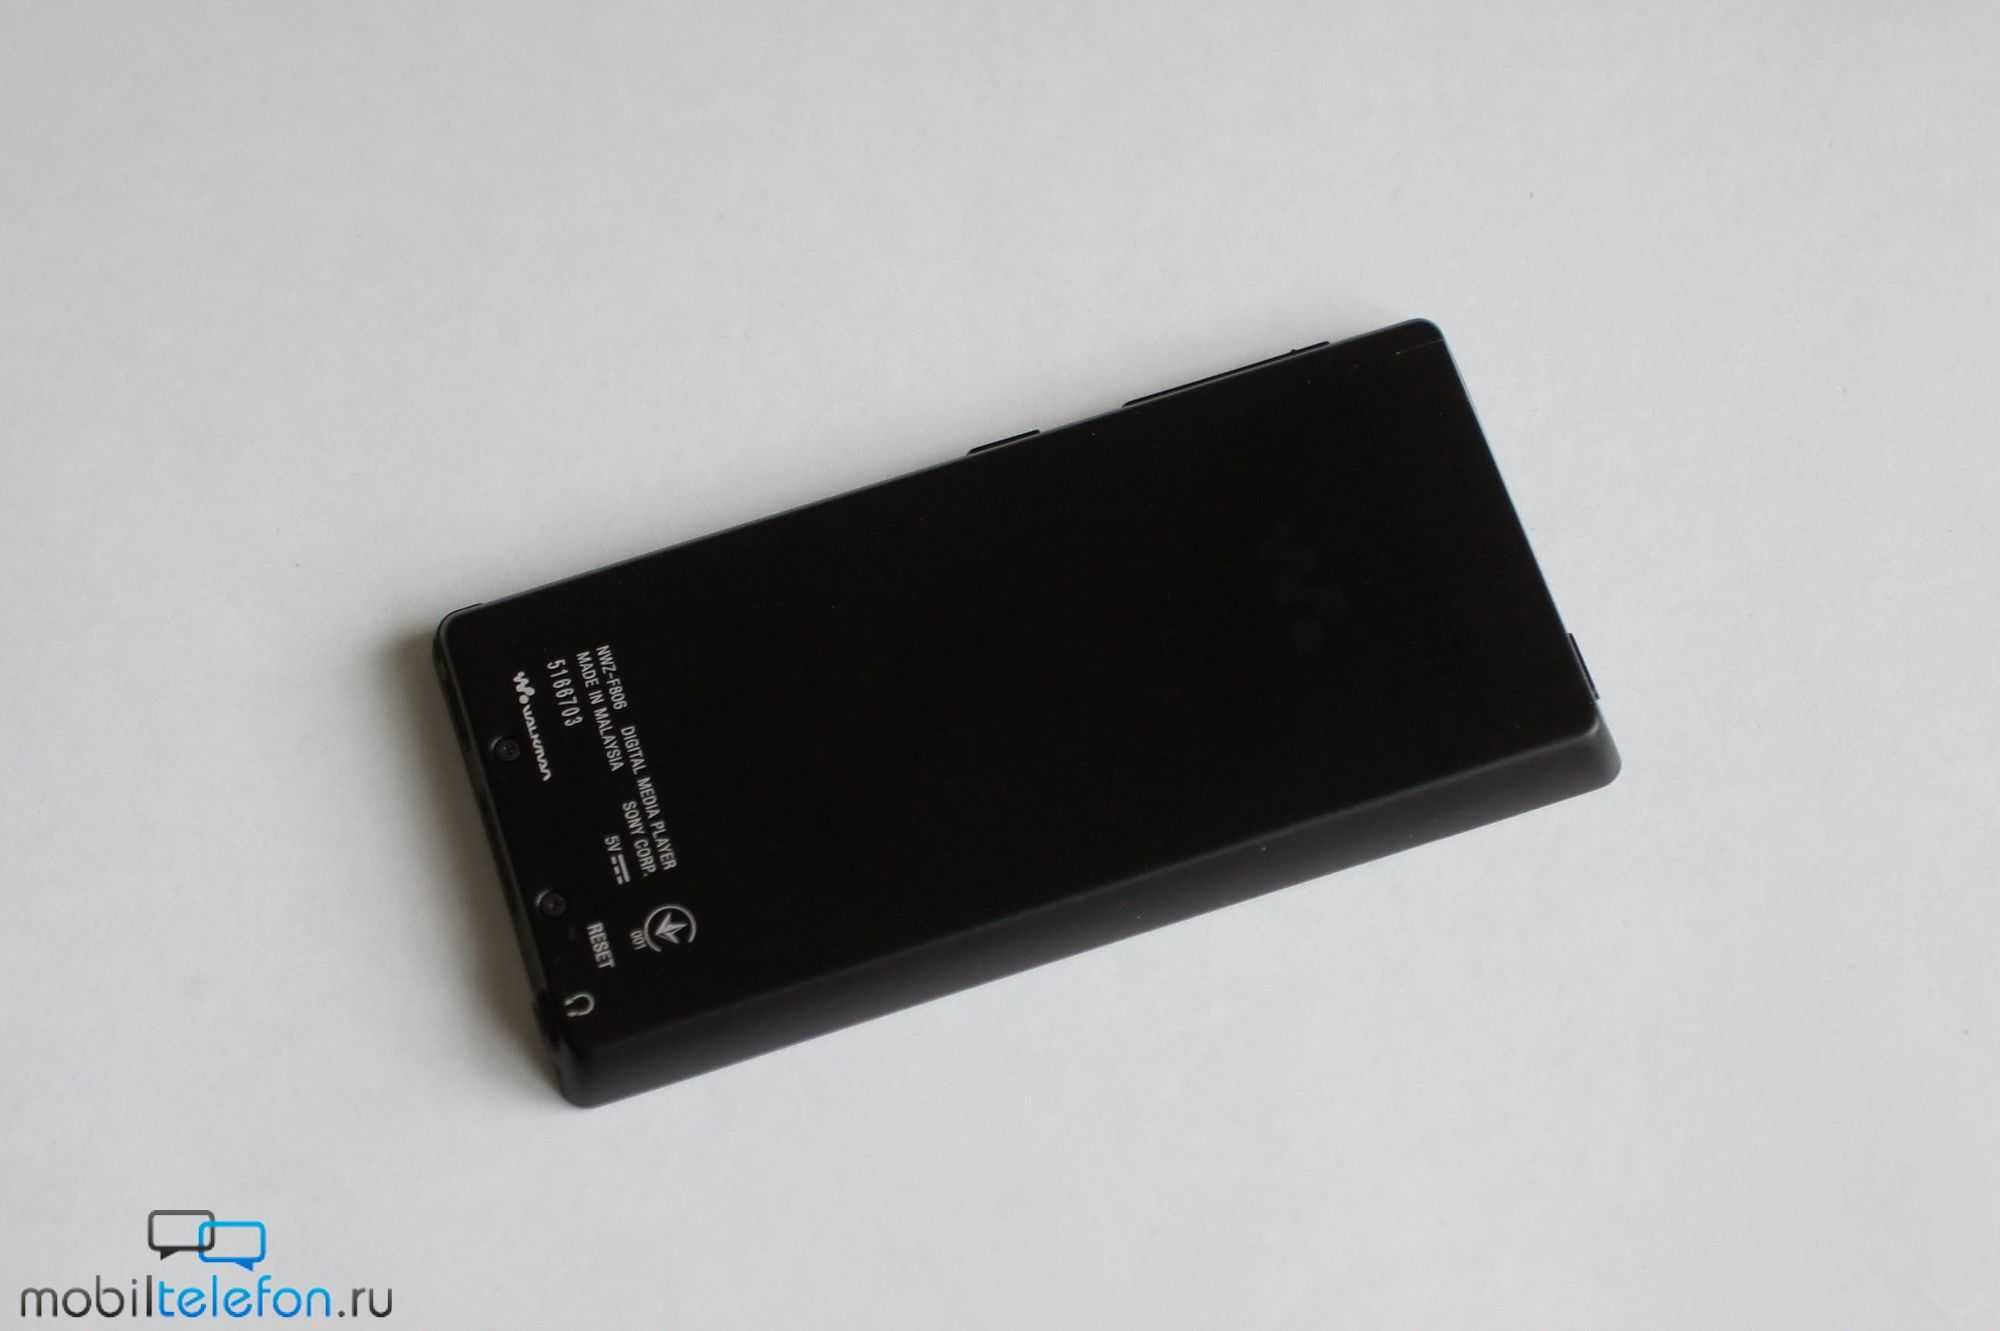 Sony nwz-f805 (черный) - купить , скидки, цена, отзывы, обзор, характеристики - mp3 плееры